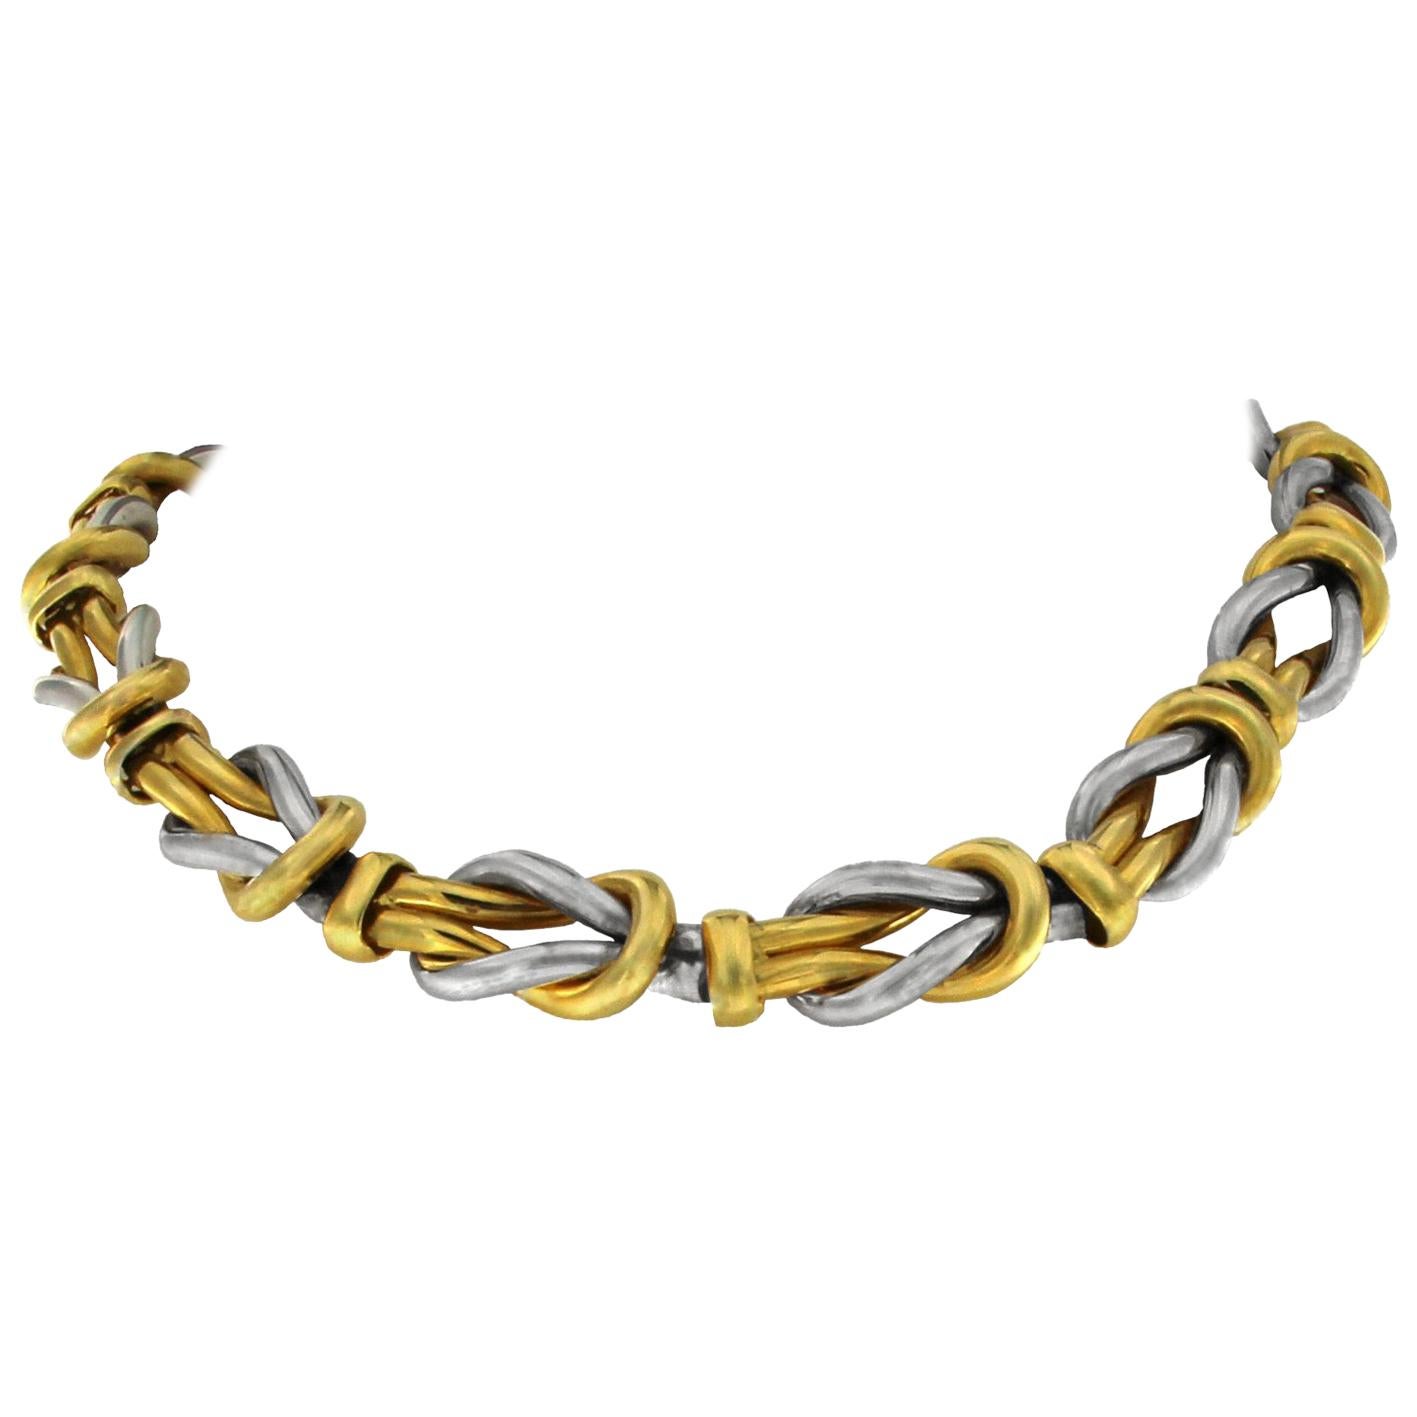 Gelbgold-Halskette mit doppeltem Knoten, 18 Karat